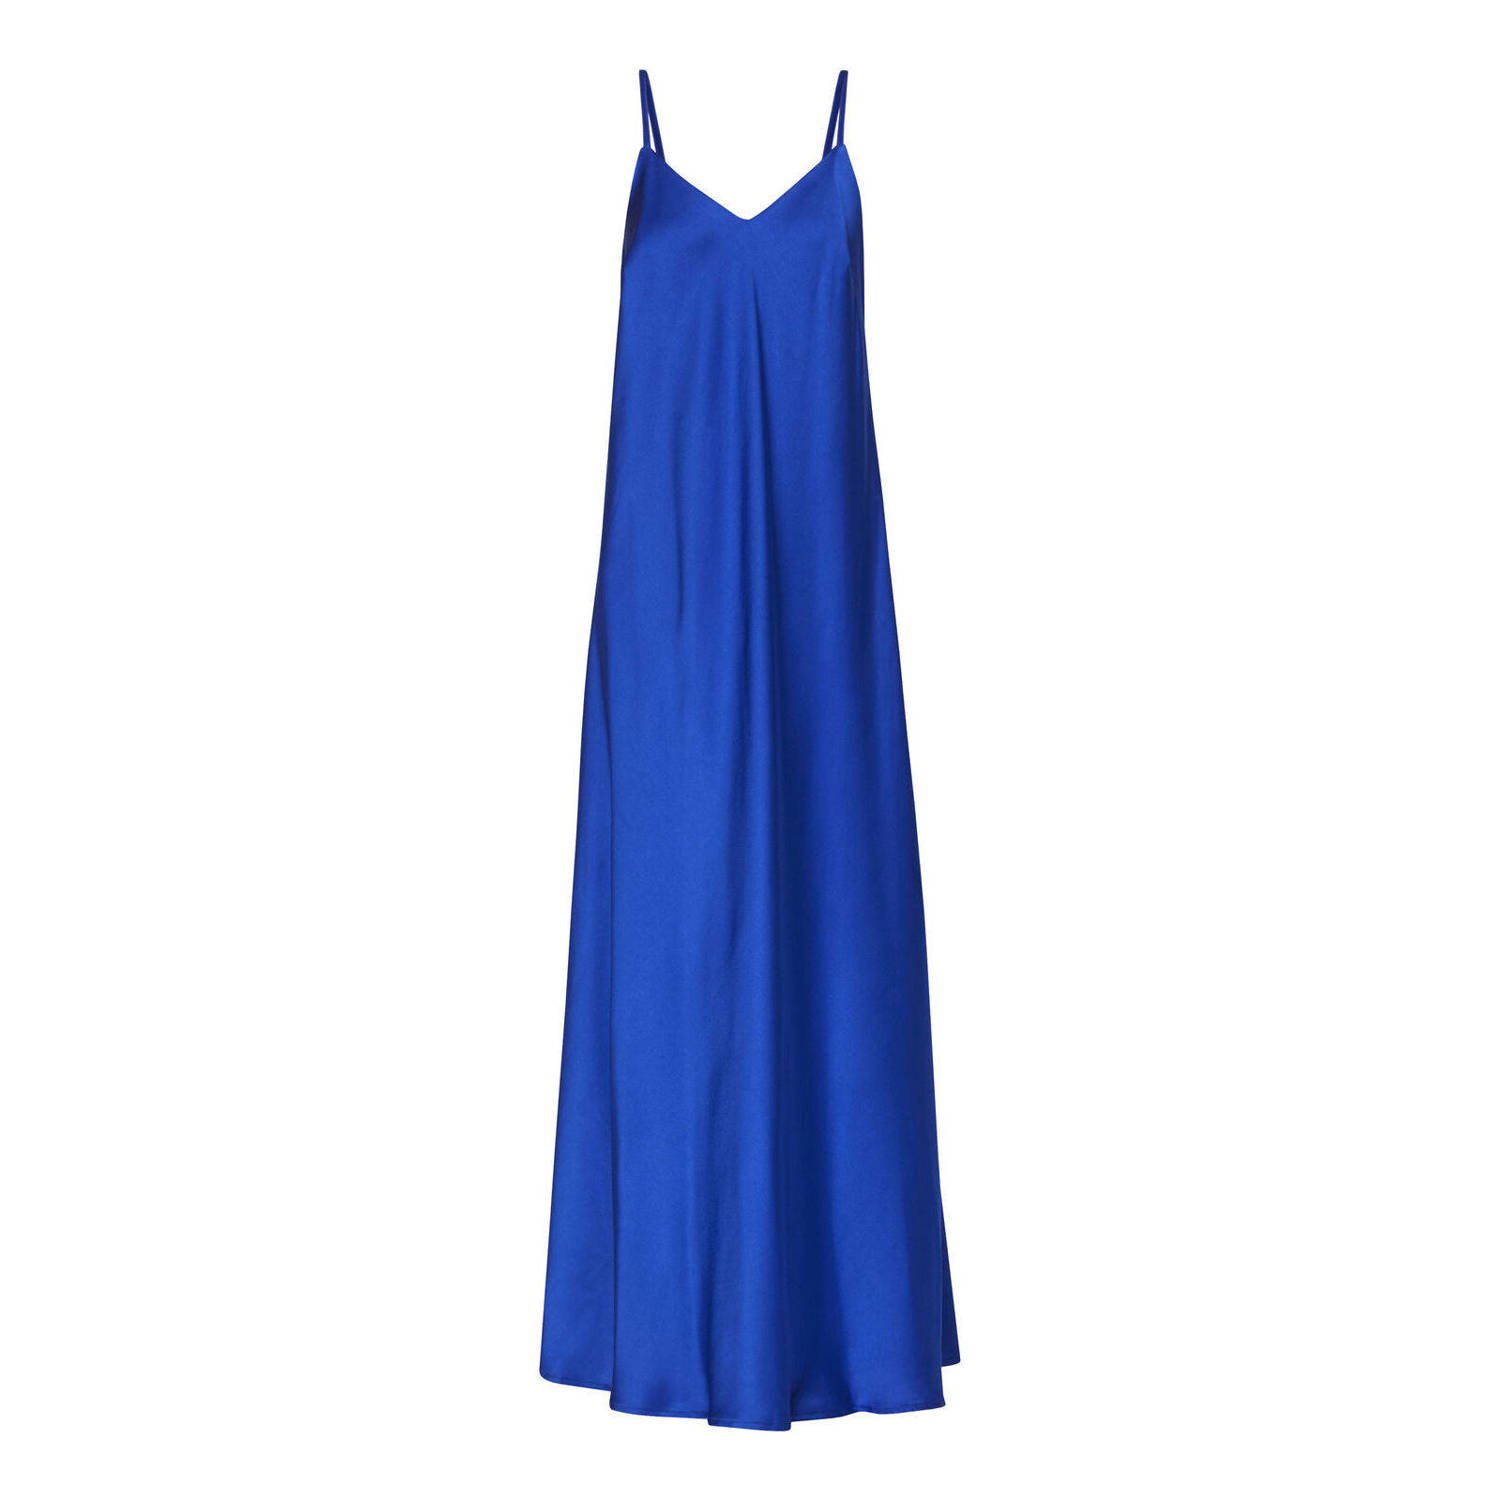 SisterS Point satijnen maxi jurk met open rug blauw